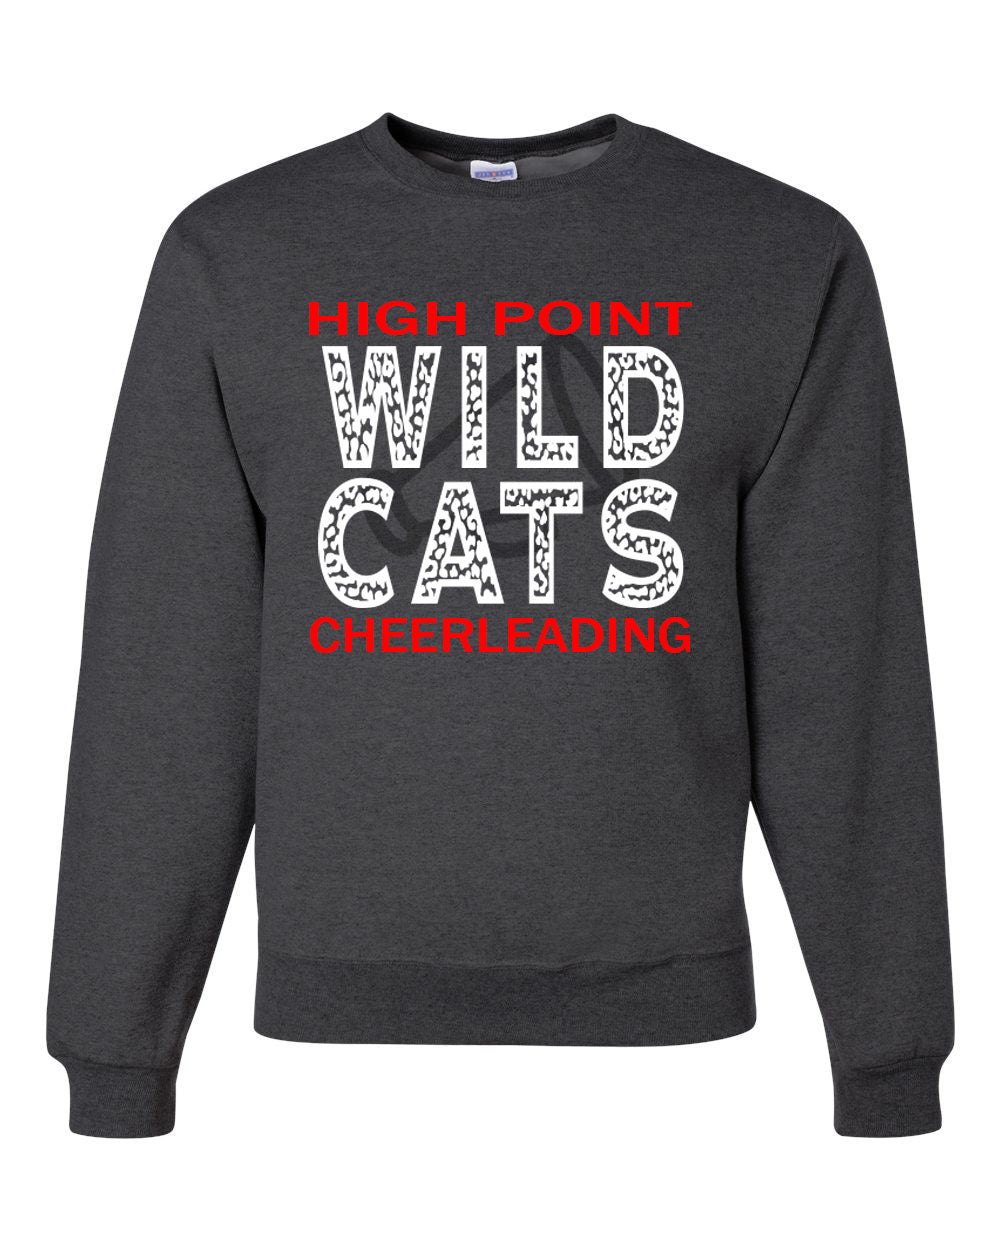 Wildcats Cheer Design 1 non hooded sweatshirt